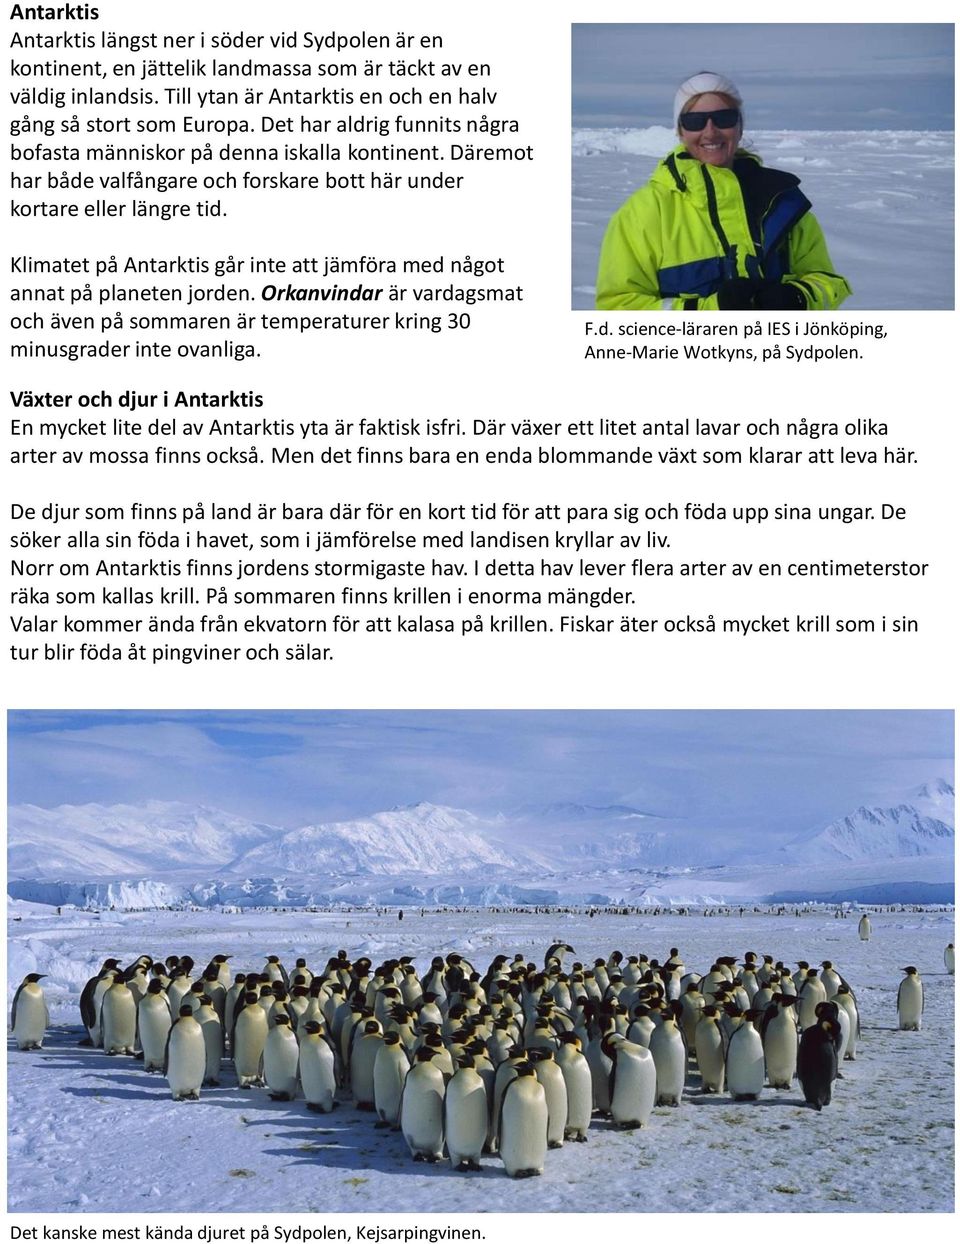 Klimatet på Antarktis går inte att jämföra med något annat på planeten jorden. Orkanvindar är vardagsmat och även på sommaren är temperaturer kring 30 minusgrader inte ovanliga. F.d. science-läraren på IES i Jönköping, Anne-Marie Wotkyns, på Sydpolen.